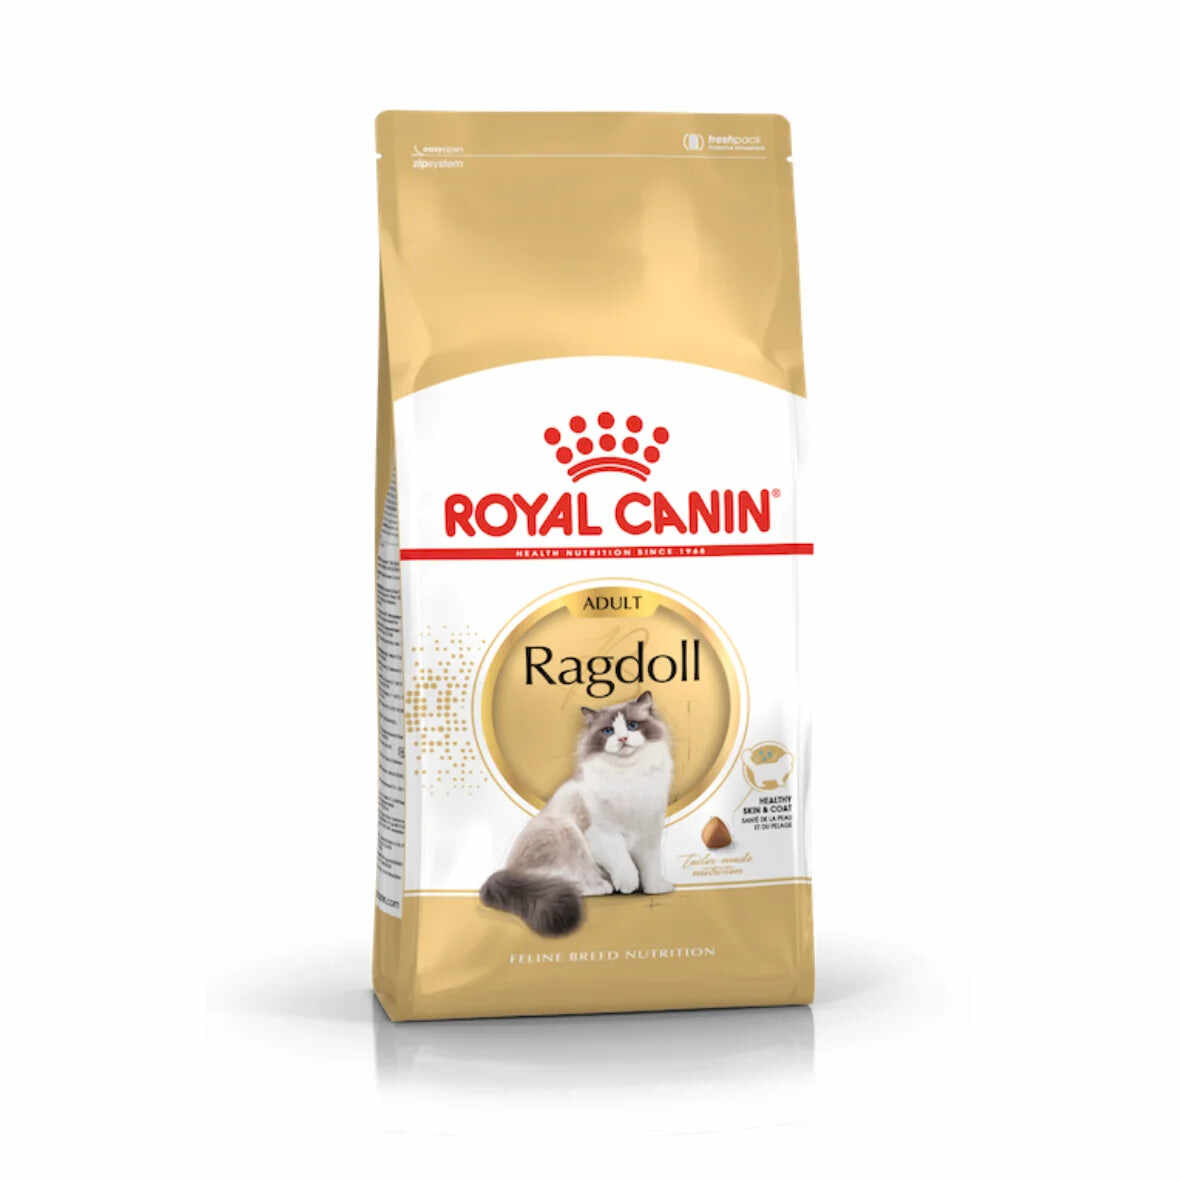 Royal Canin - Adult Ragdoll Dry Food